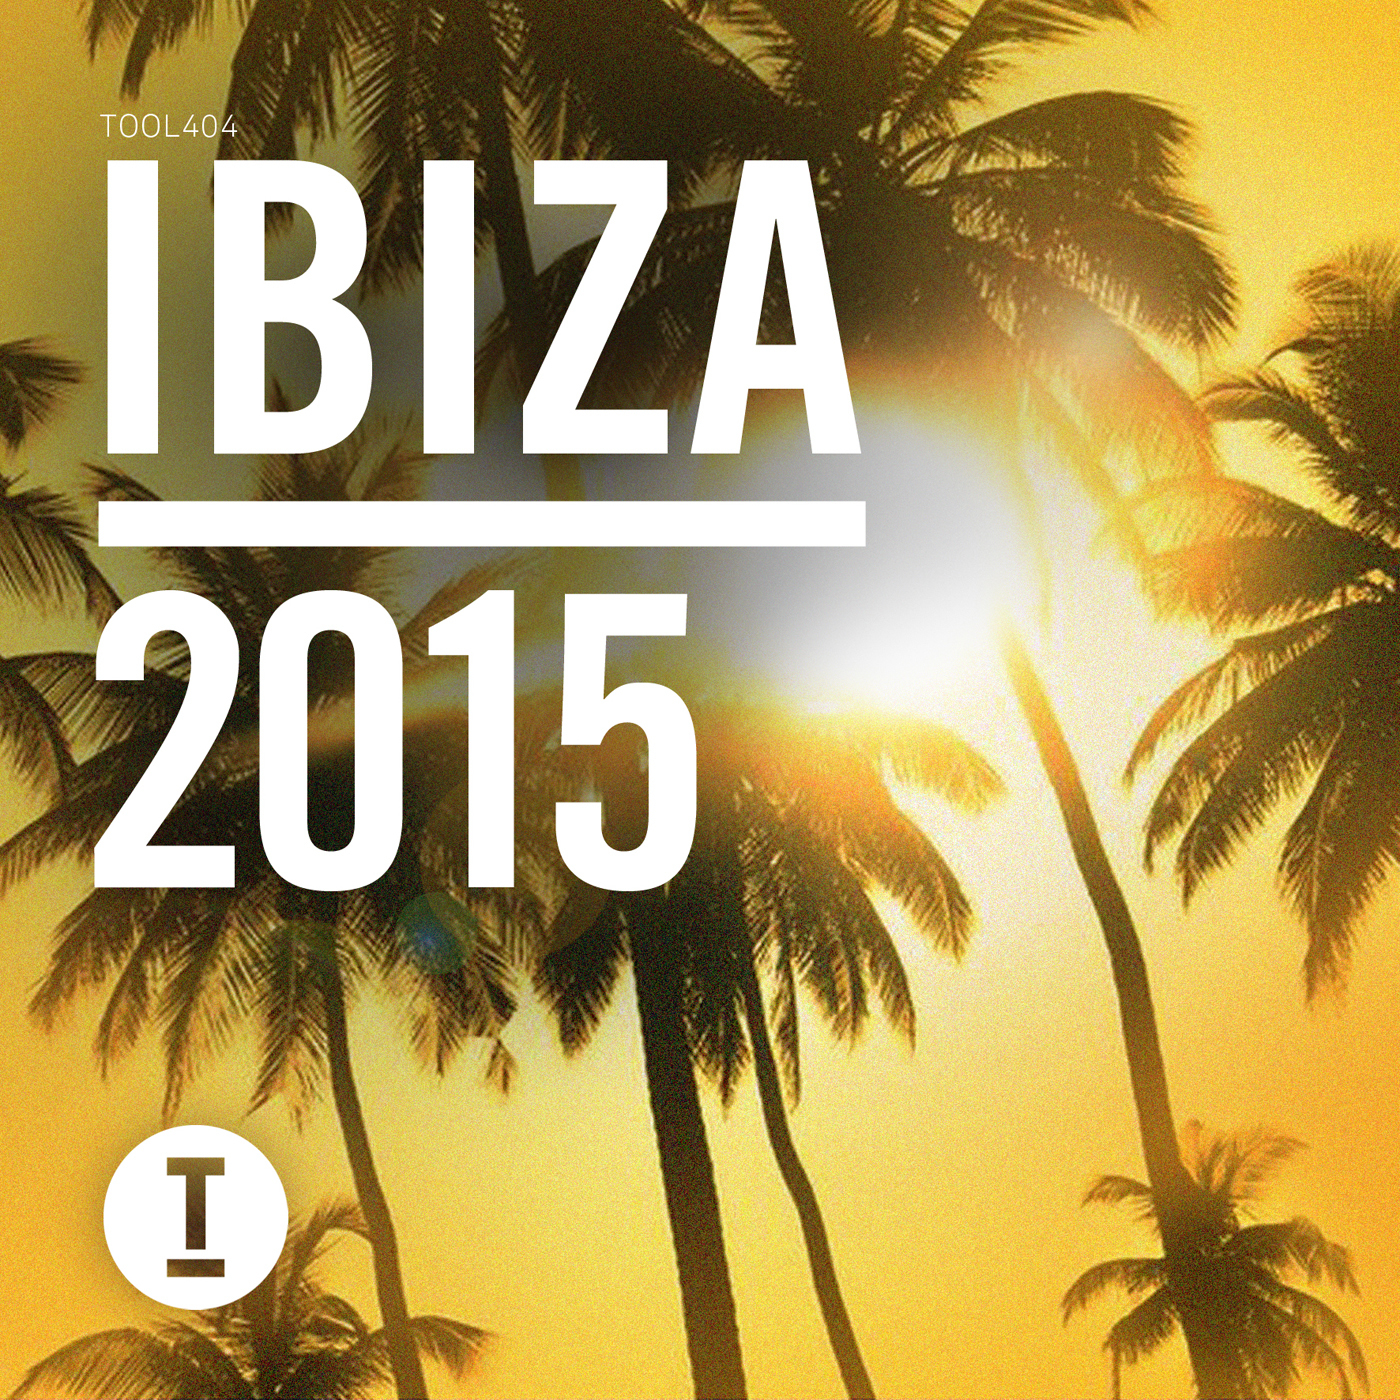 Toolroom Ibiza 2015 (Afterclub Mix)